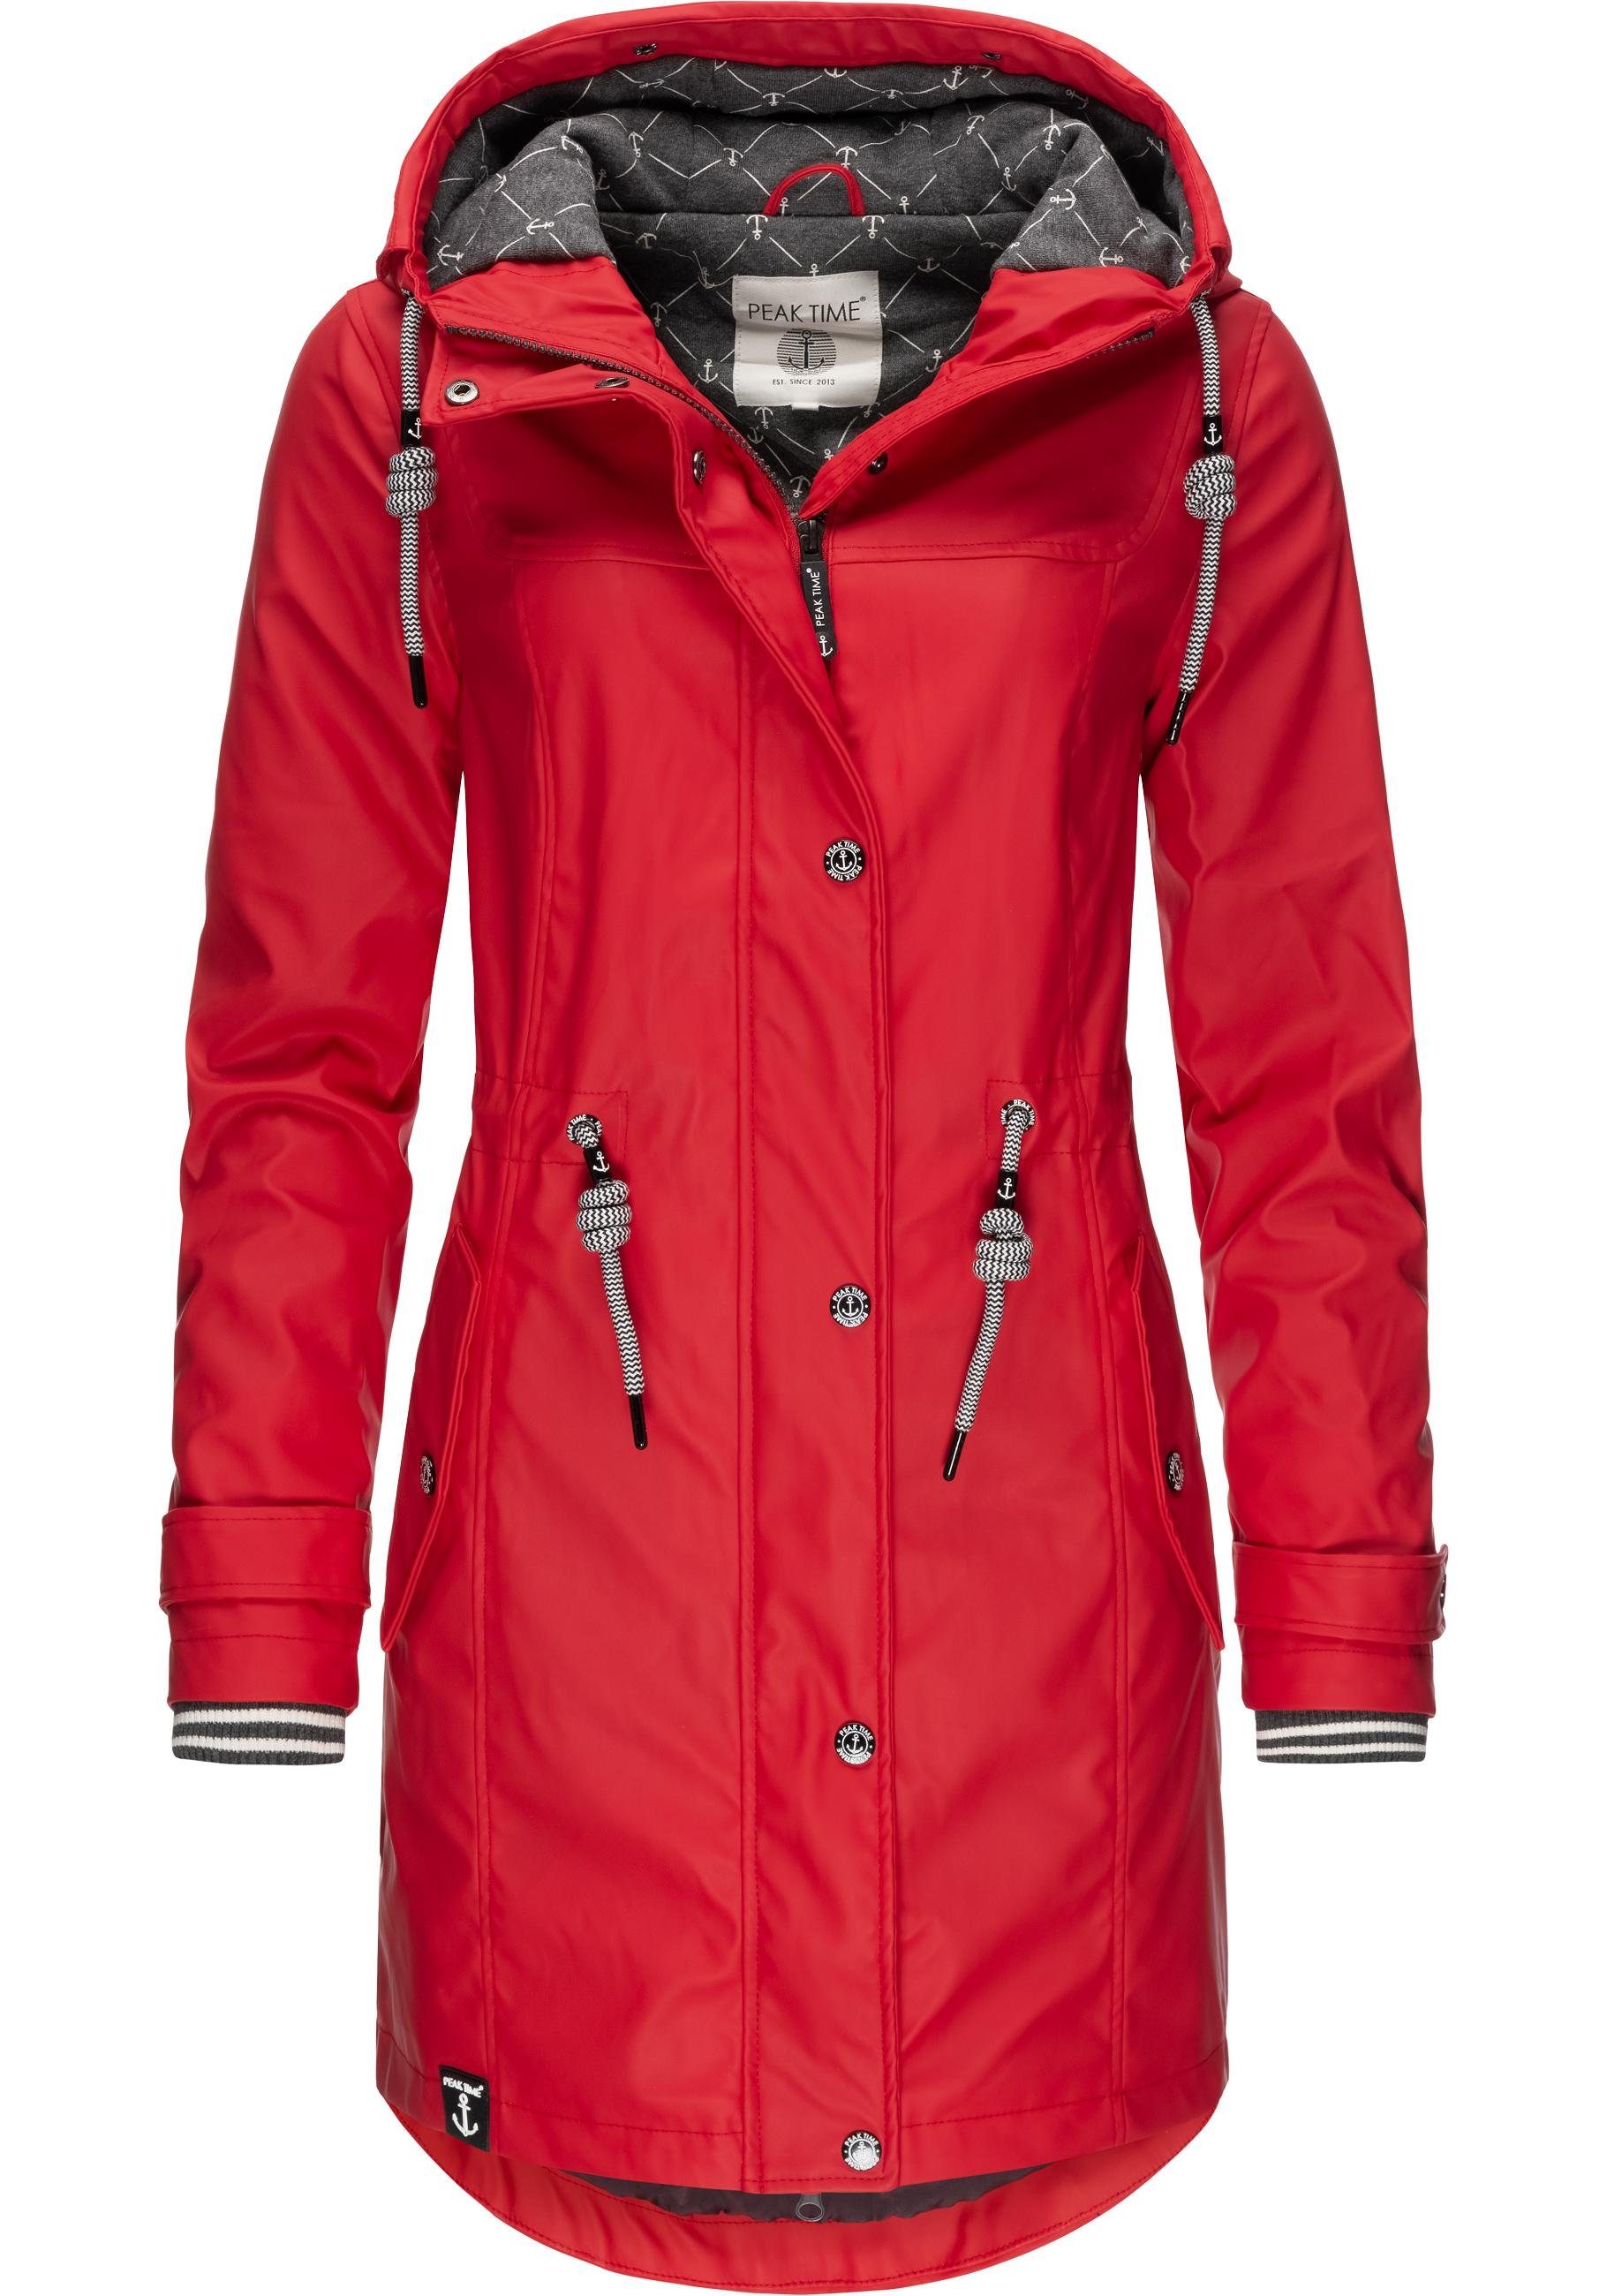 Rote Jacke online kaufen | OTTO